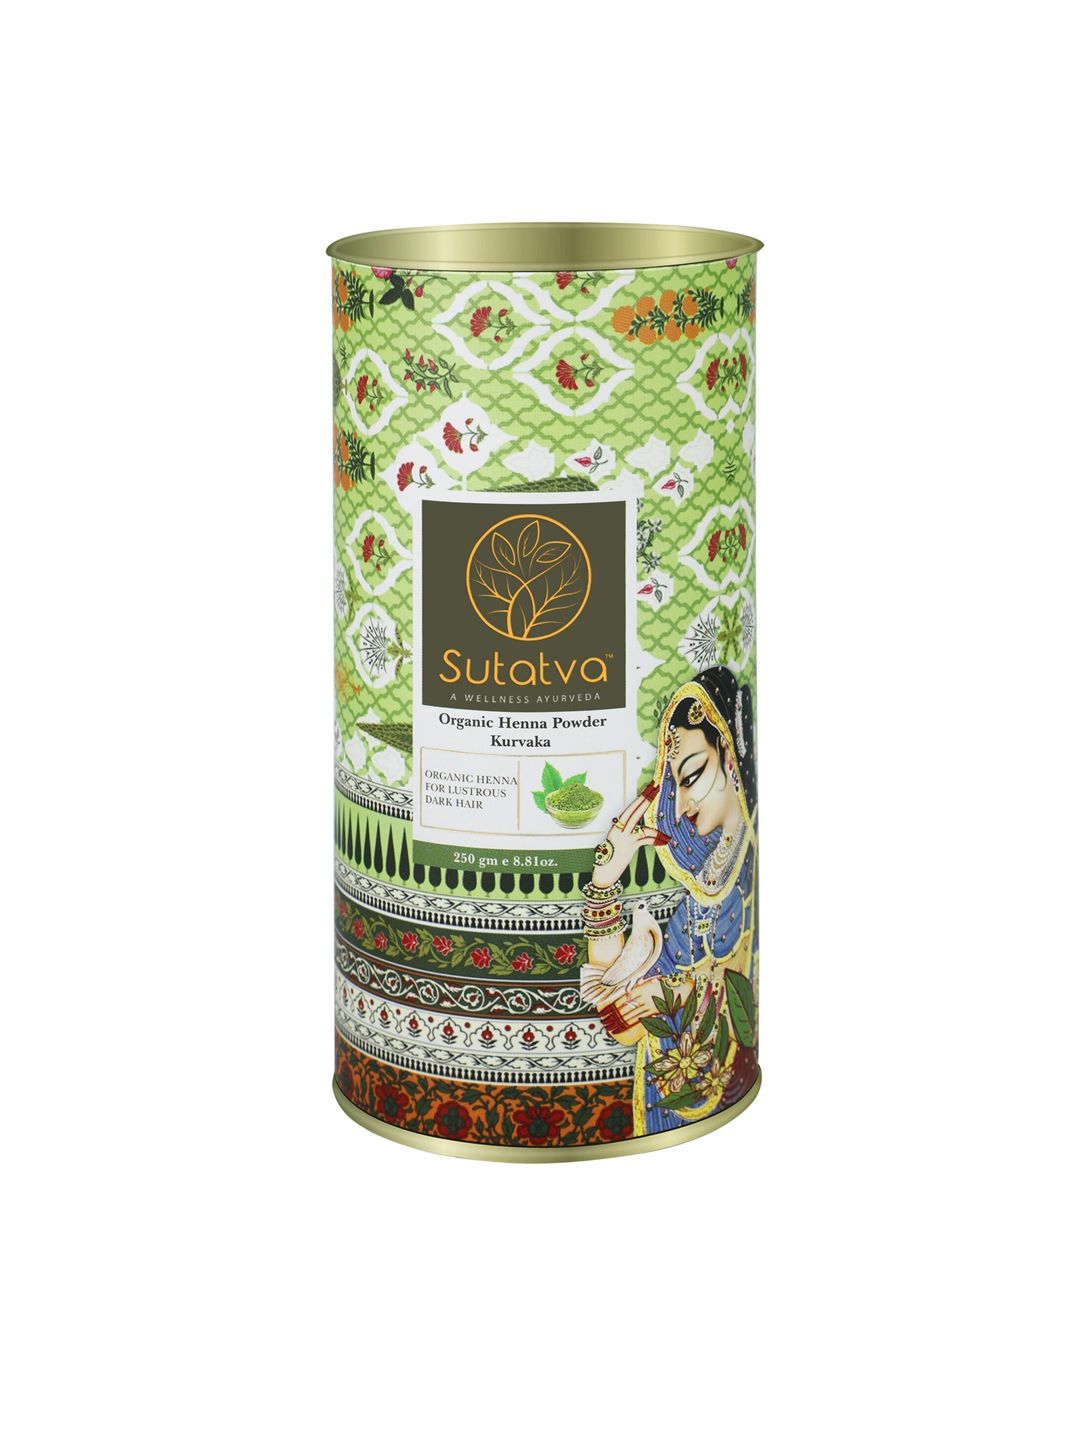 Sutatva Organic Henna Powder 250 gm Price in India